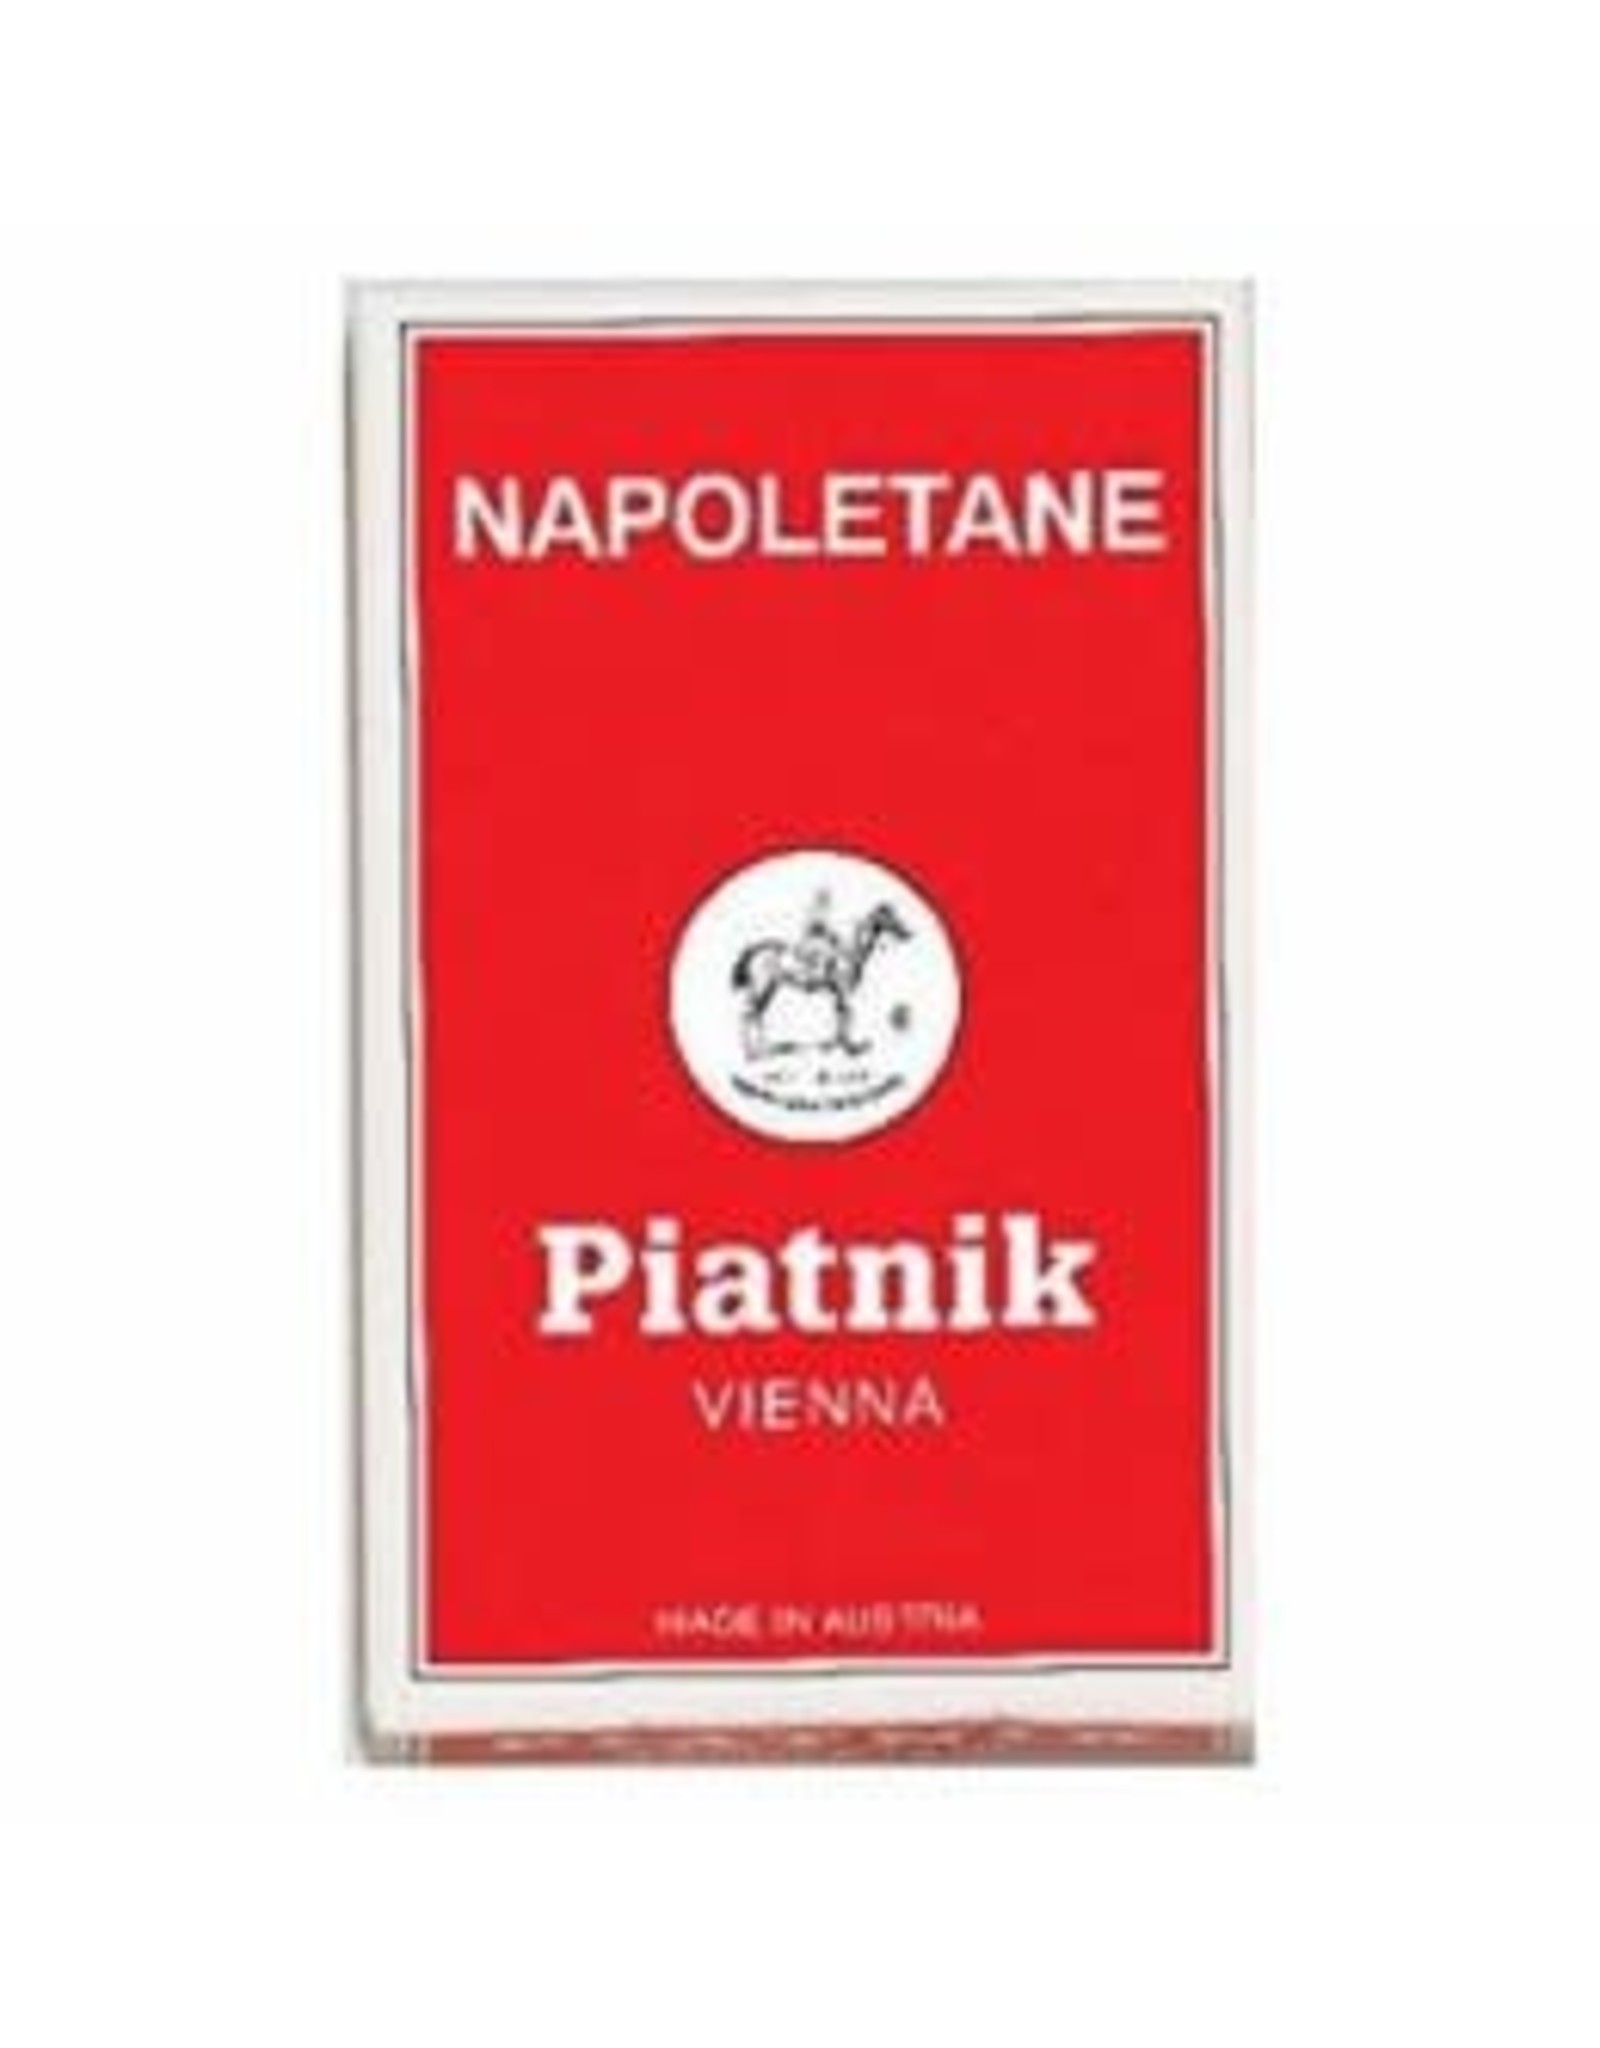 Piatnik Cards game (Napoletane)